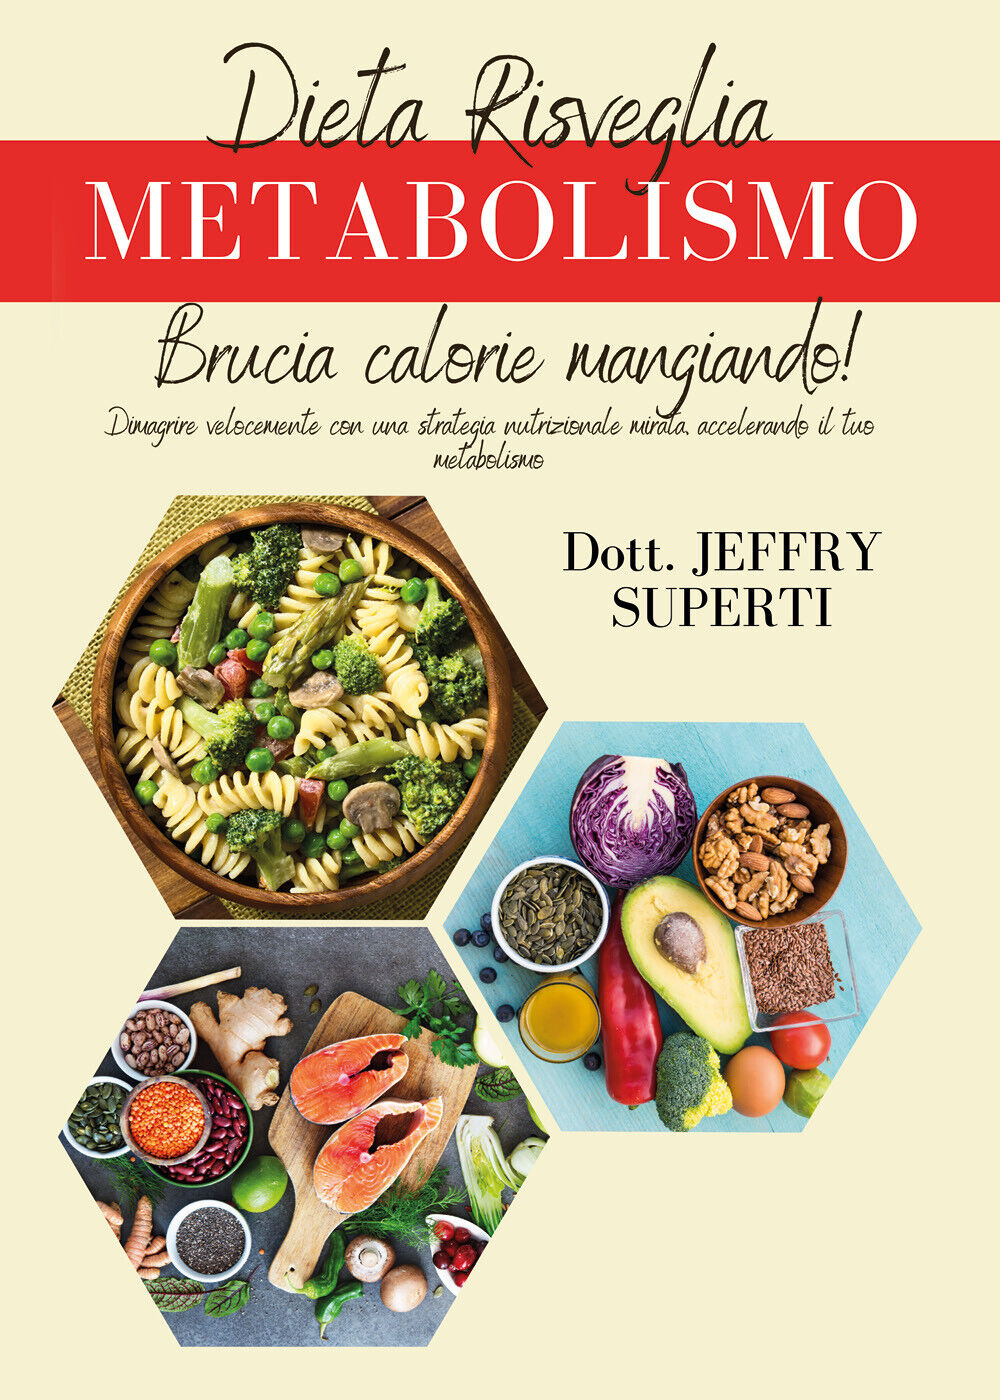 Dieta risveglia metabolismo. Dimagrire velocemente con una strategia nutrizional